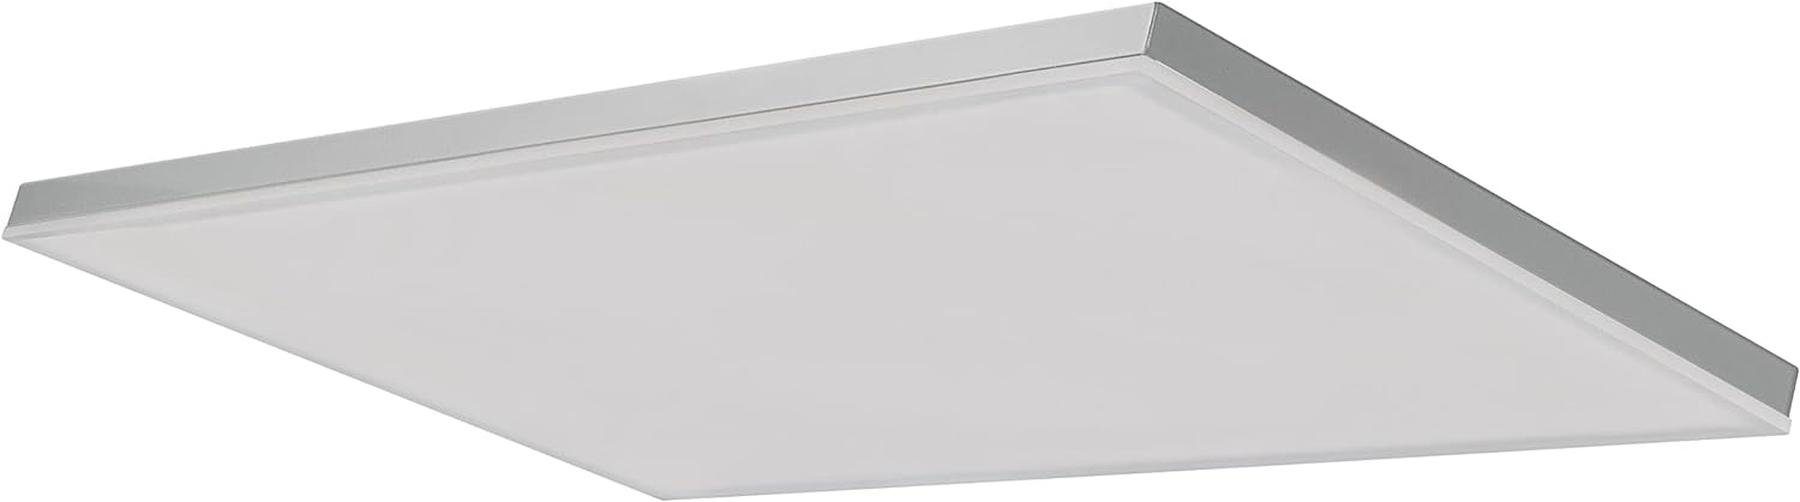 Ledvance LED Produkt 60x Dieses WiFi enthaelt Planon White warmweiss, Tunable Frameless der Ledvance Deckenleuchte dimmbar, SMAR, Lichtquelle Energieeffizienzklasse Deckenleuchte eine 30 E